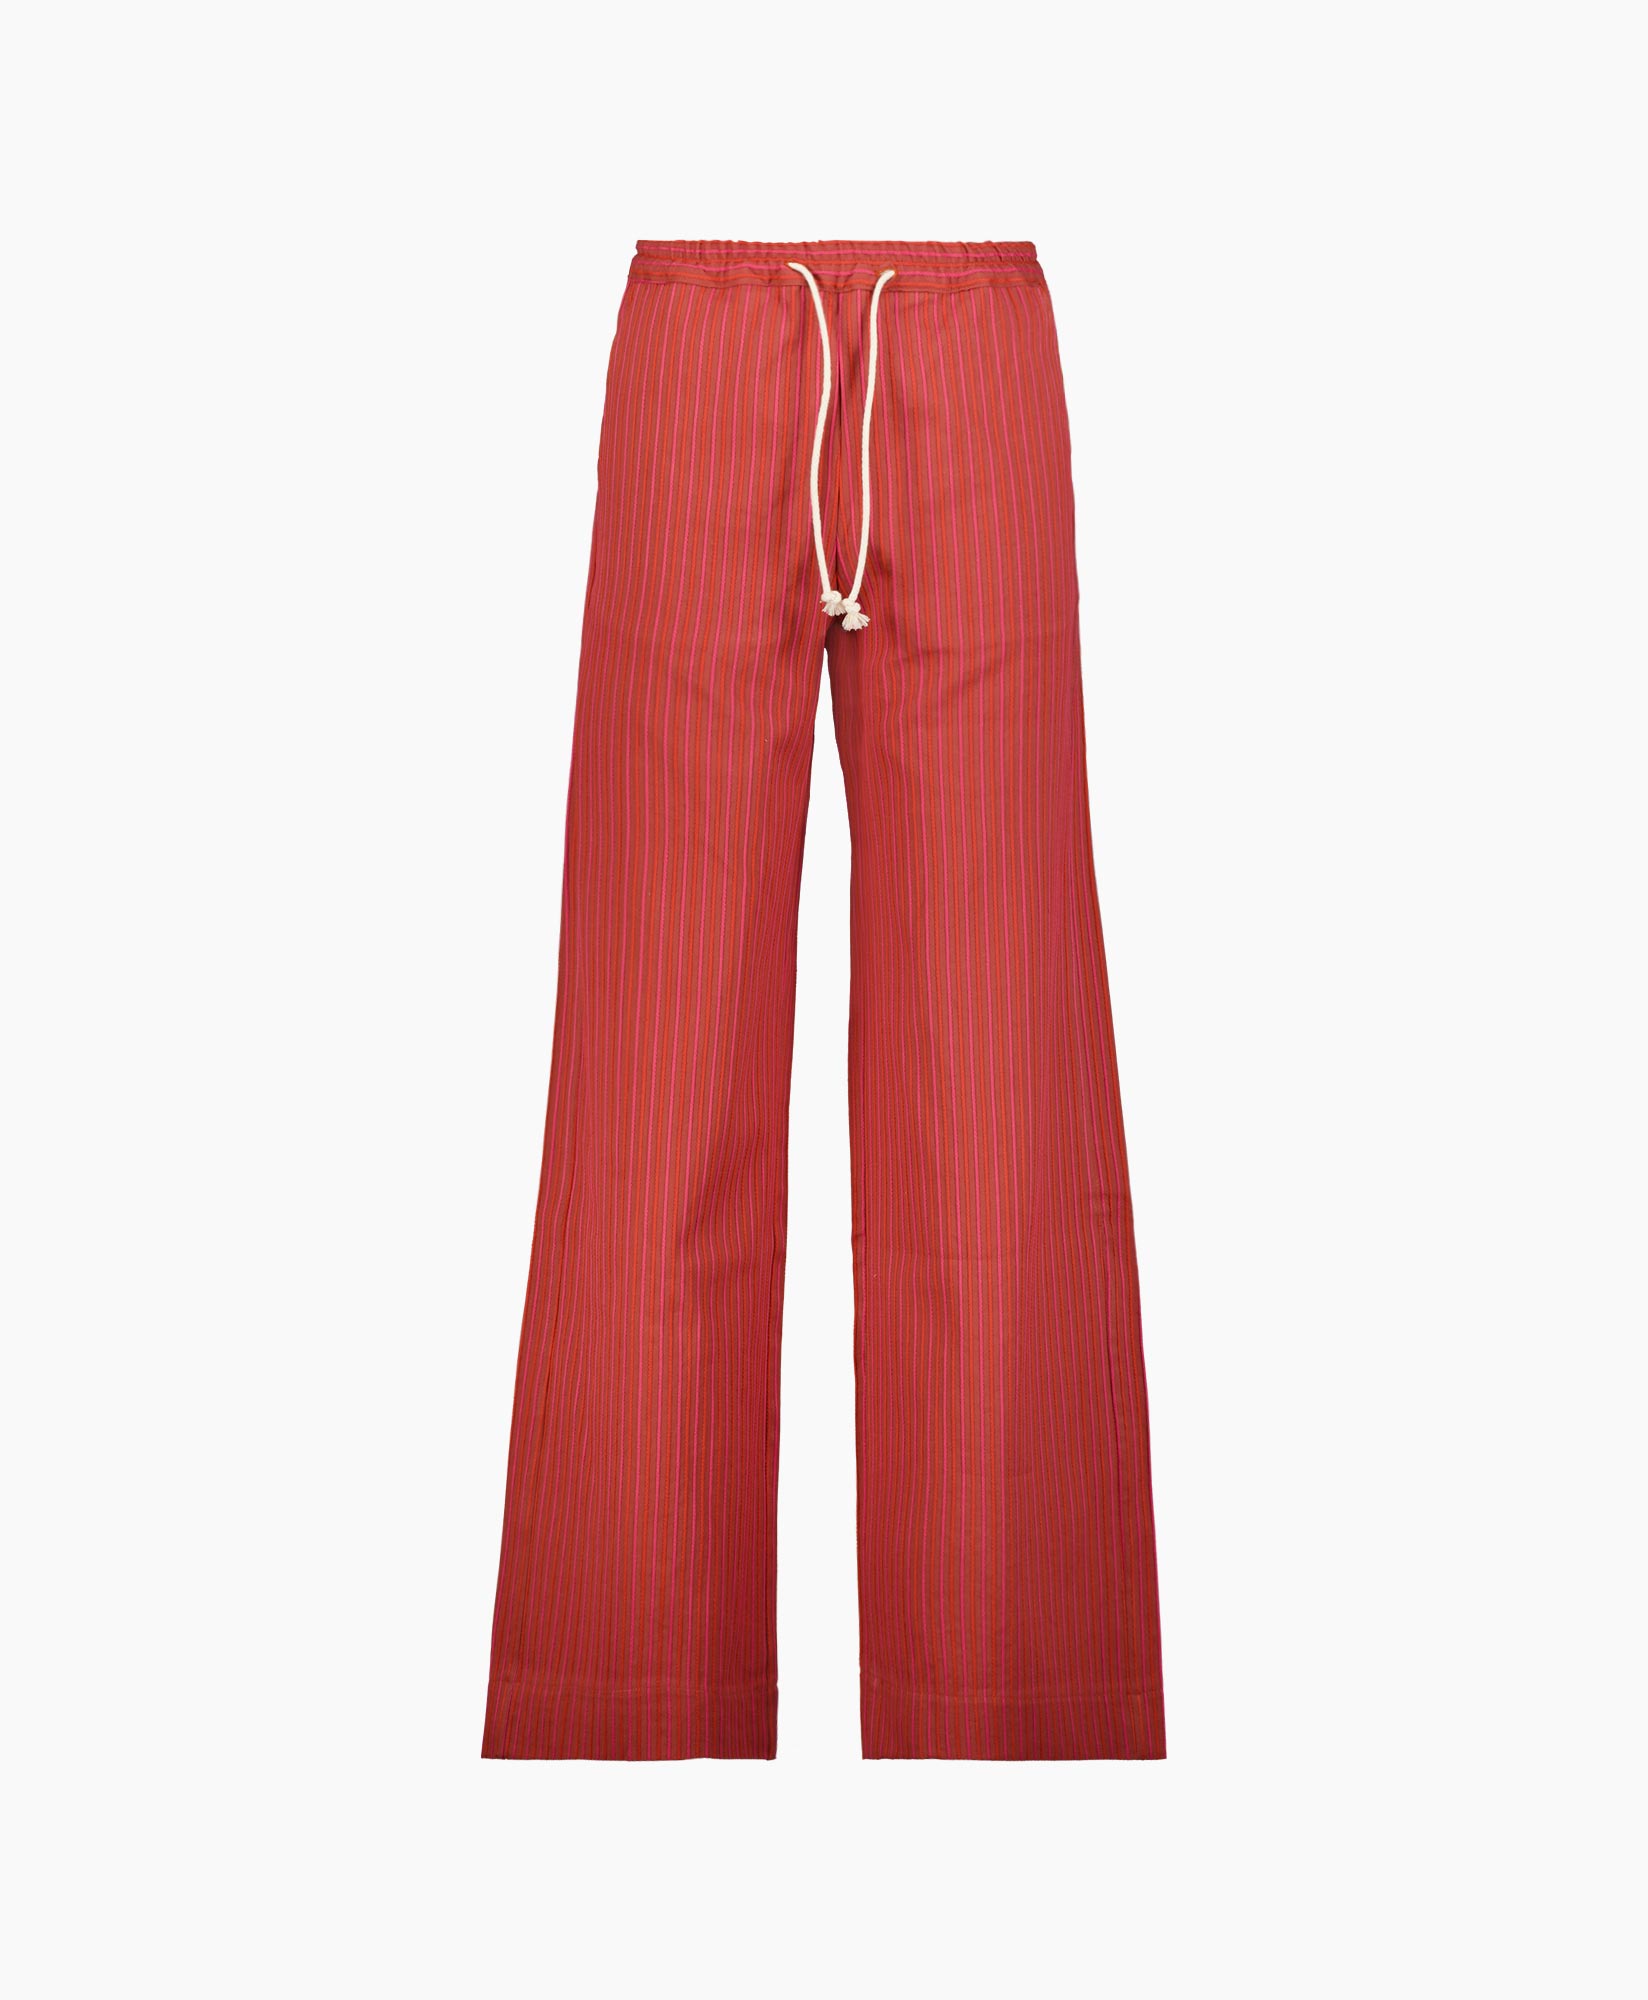 Pantalon Riley Woven donker rood